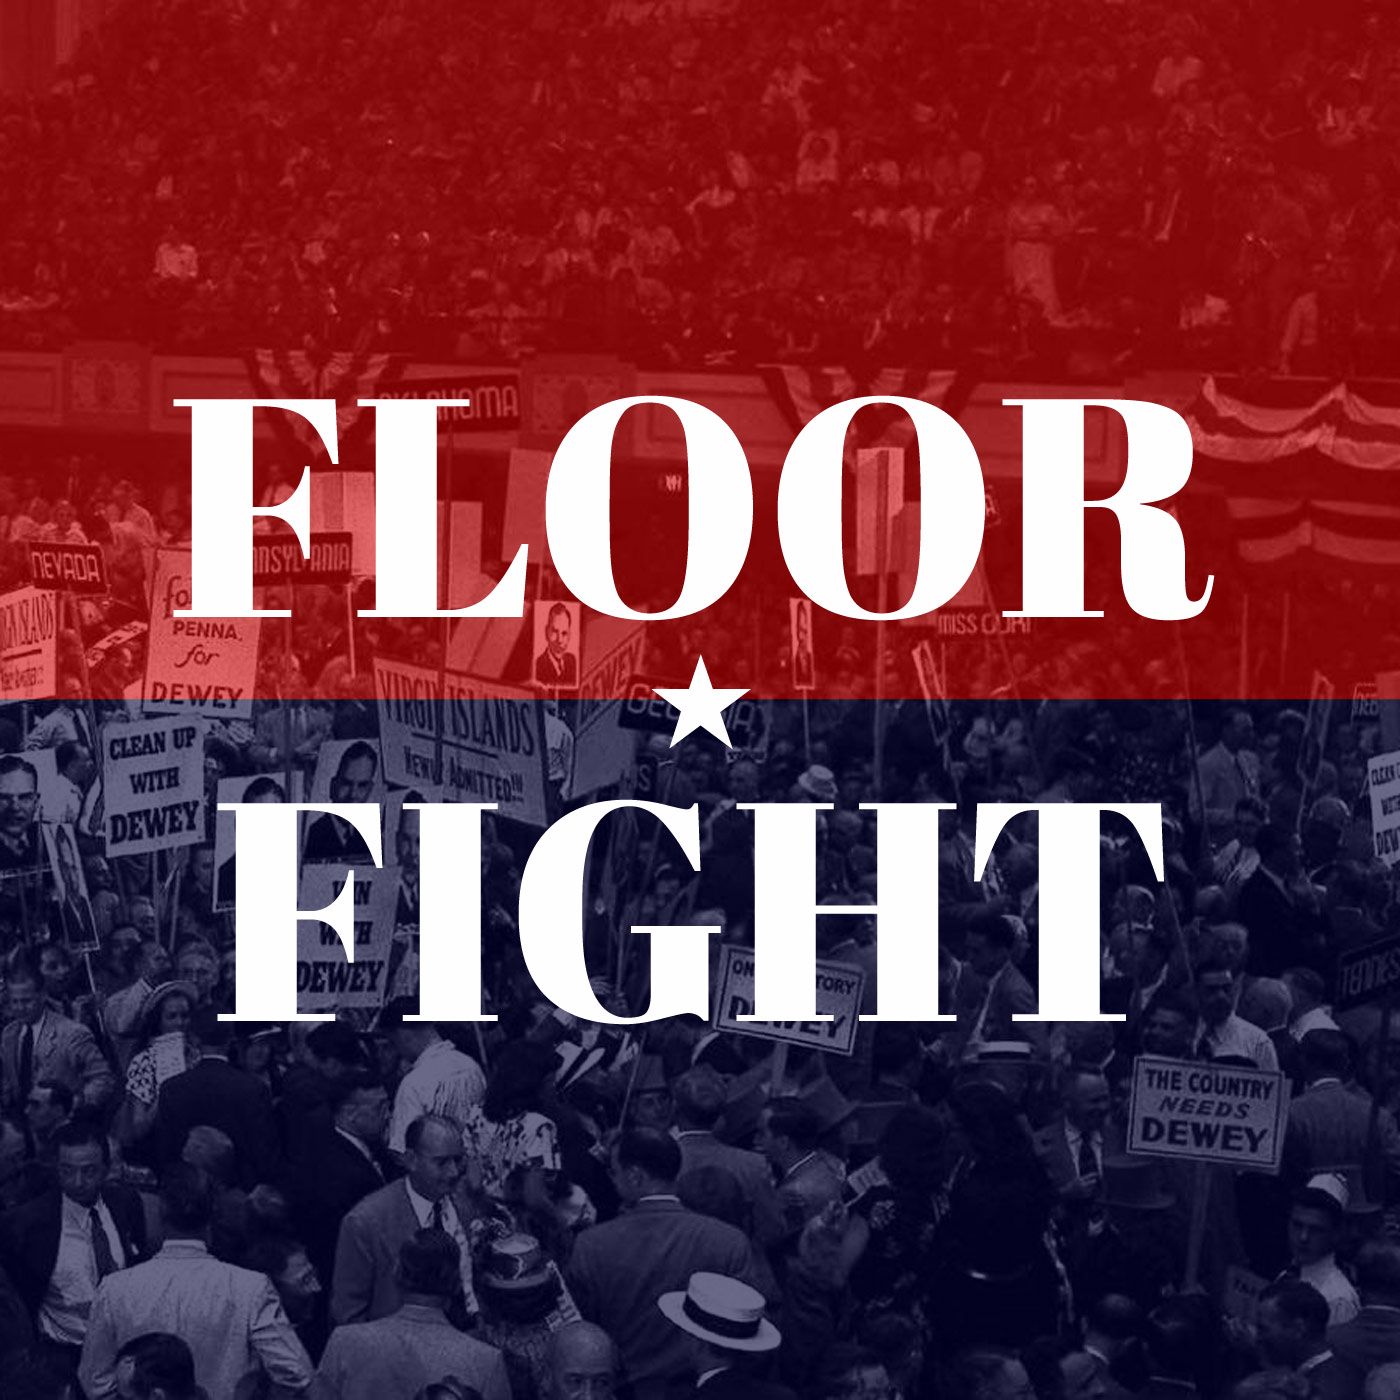 Floor Fight